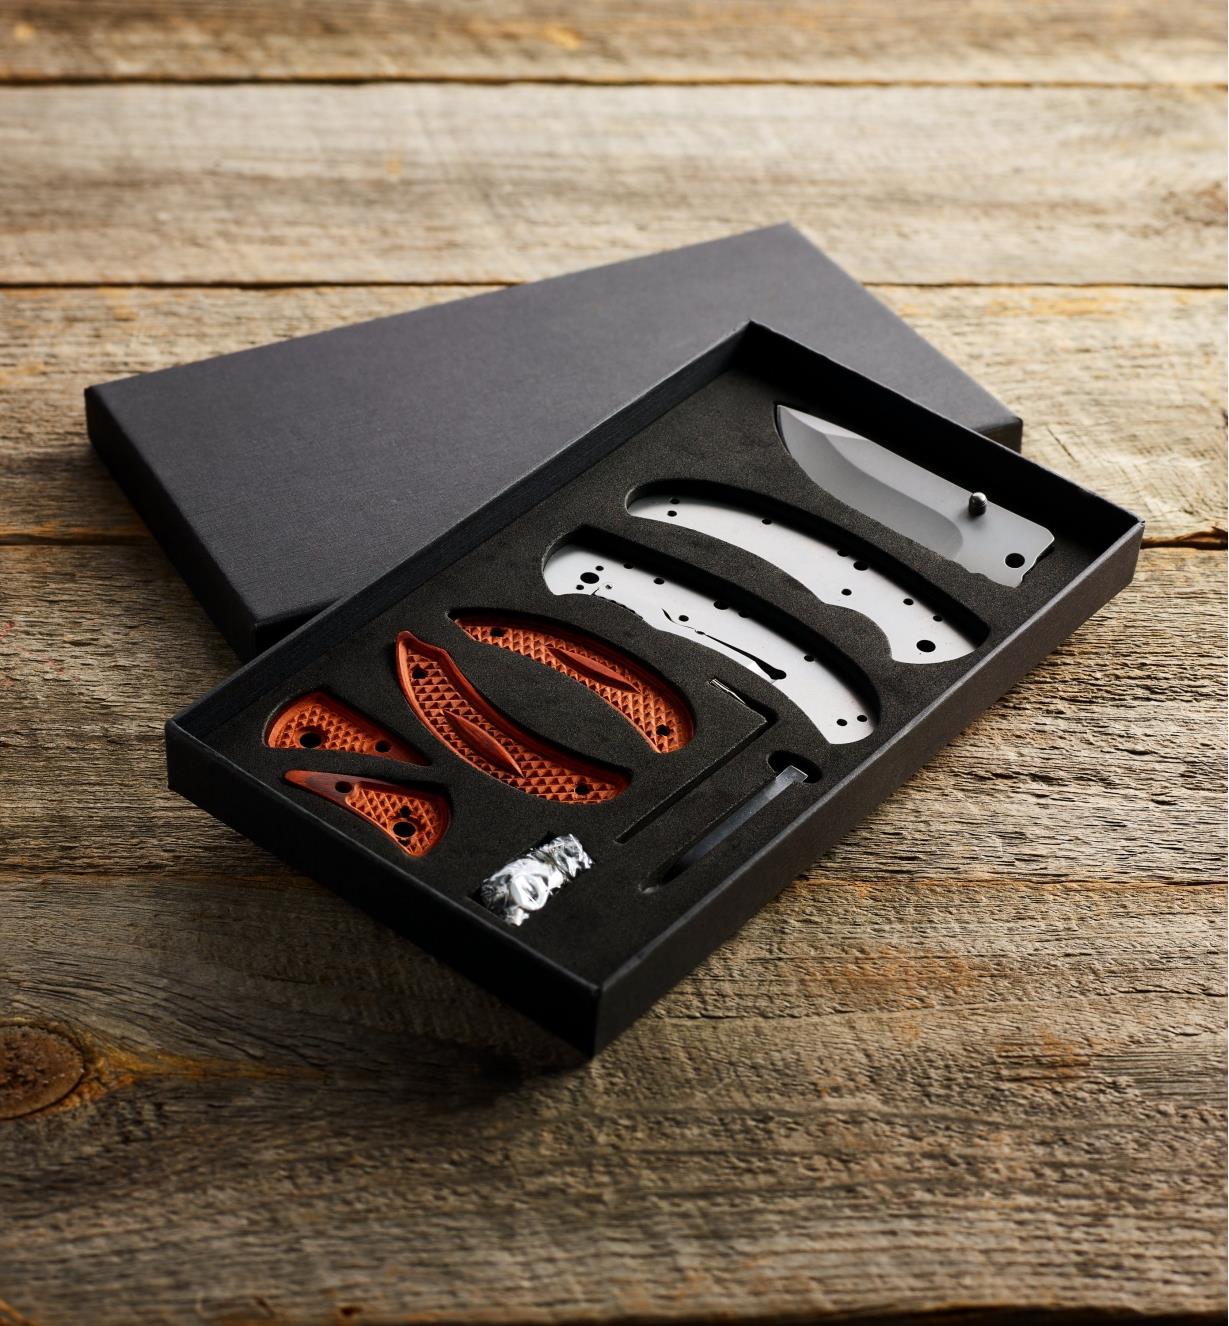 09A0306-frame-lock-folding-knife-kit-d-0149.jpg